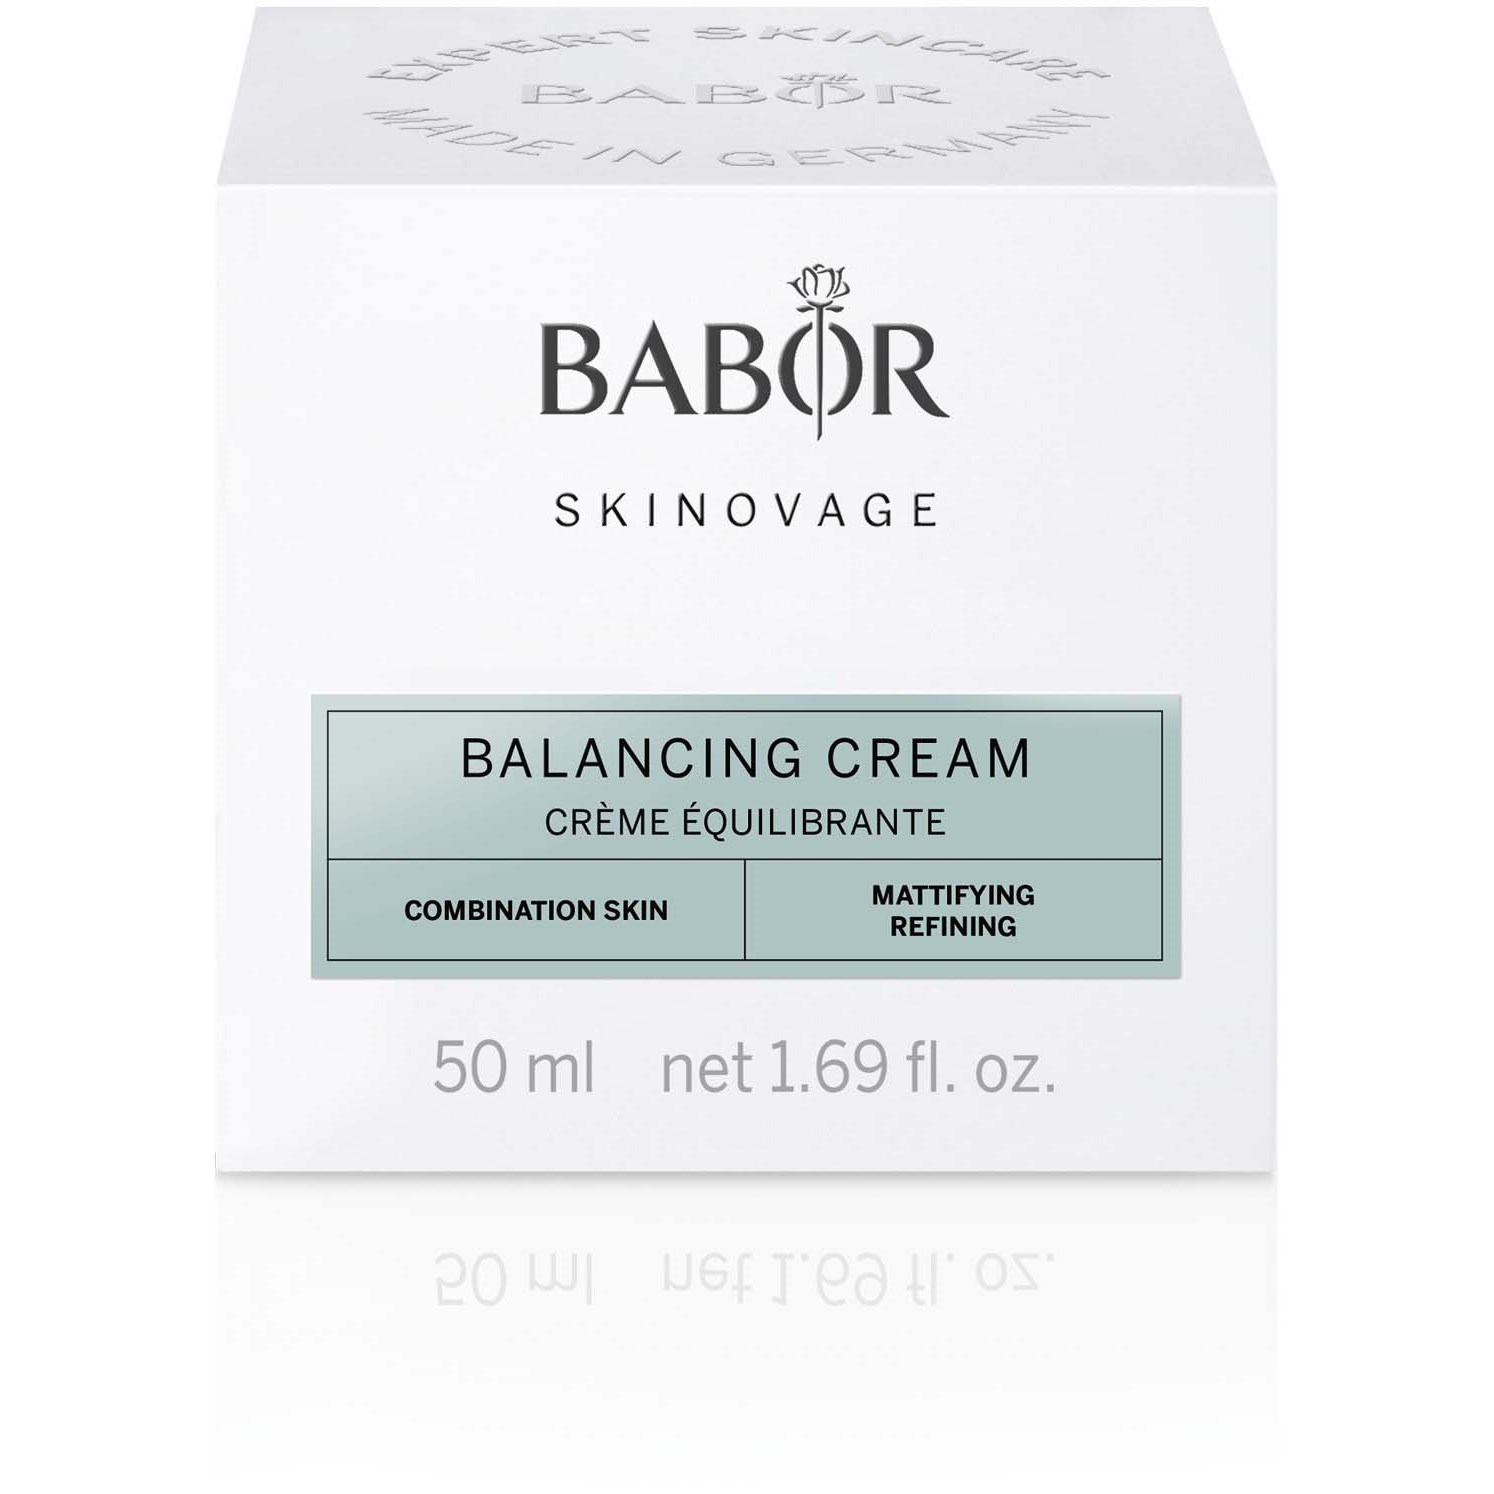 BABOR Skinovage Balancing Cream 50 ml